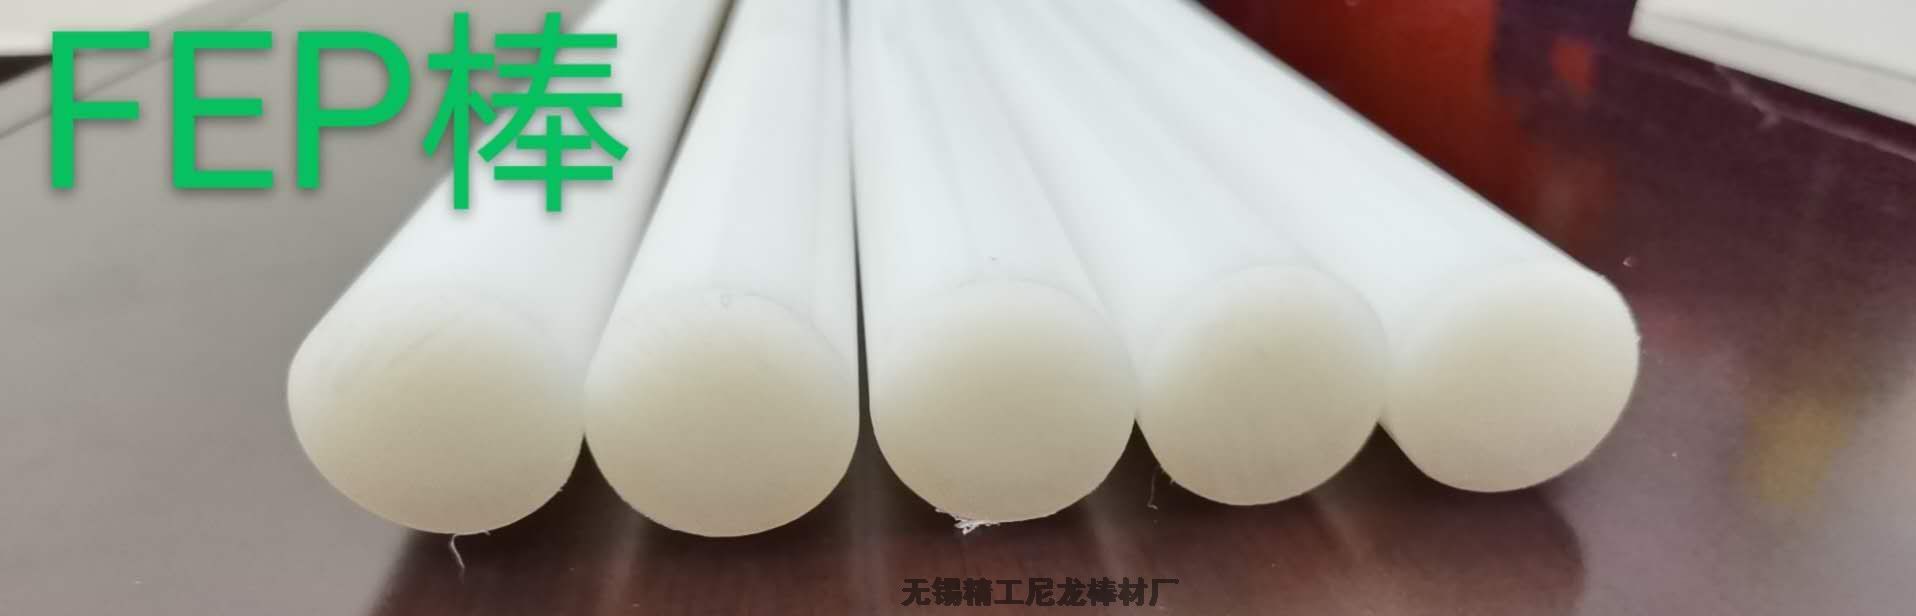 氟46棒-也称为FEP棒-一种高性能的工程塑料棒